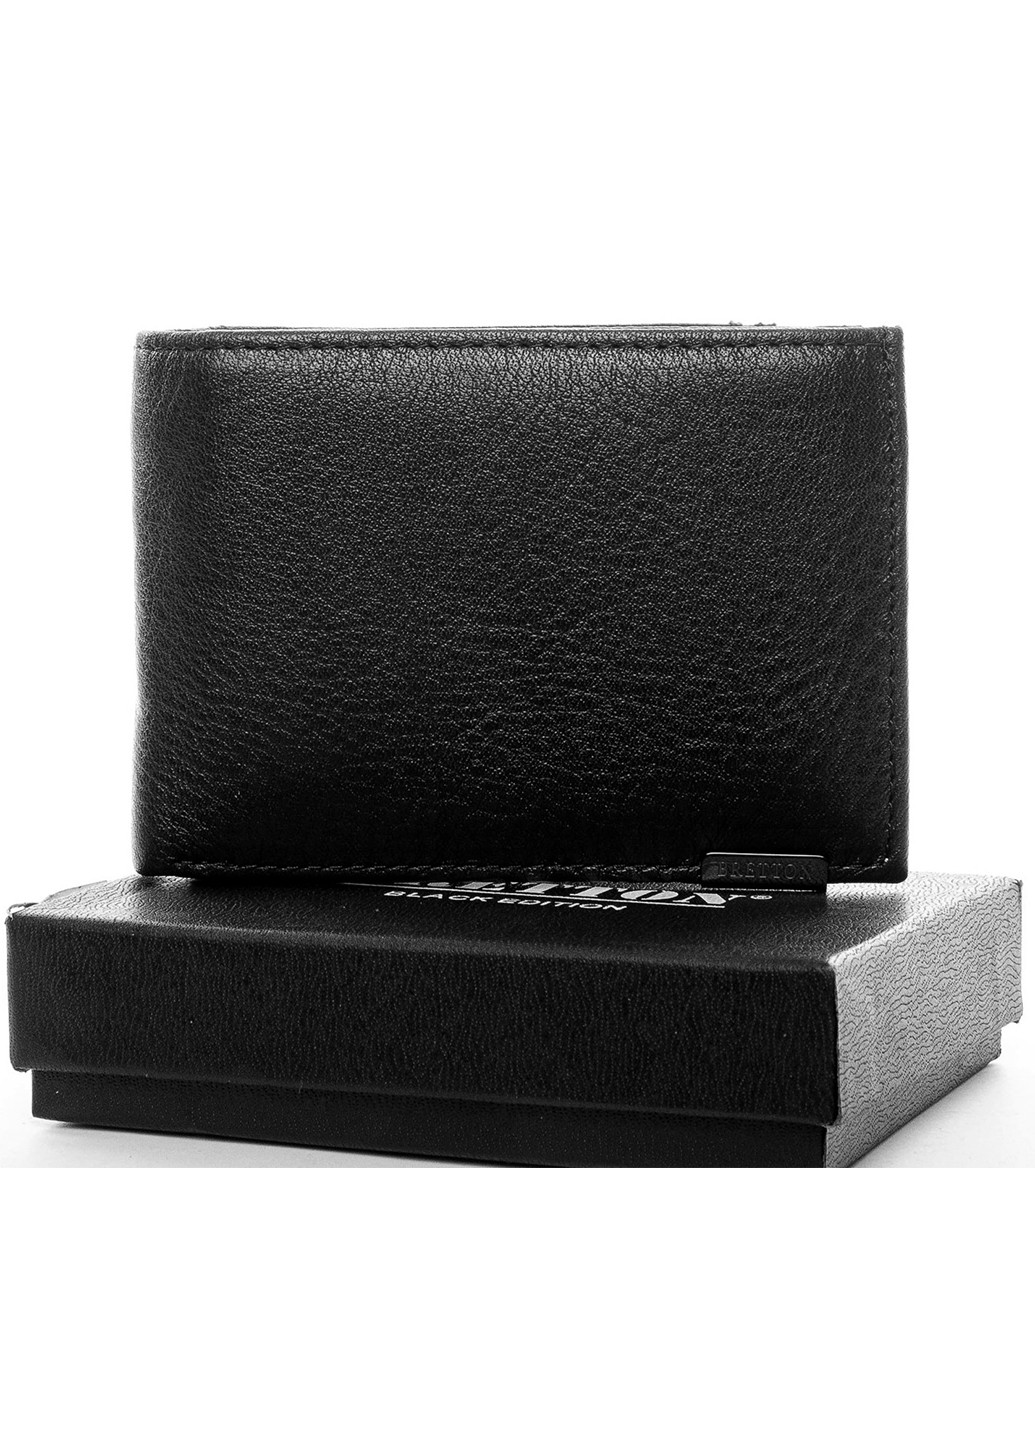 Мужской кожаный кошелек с зажимом Bretton 168-24c (277813675)